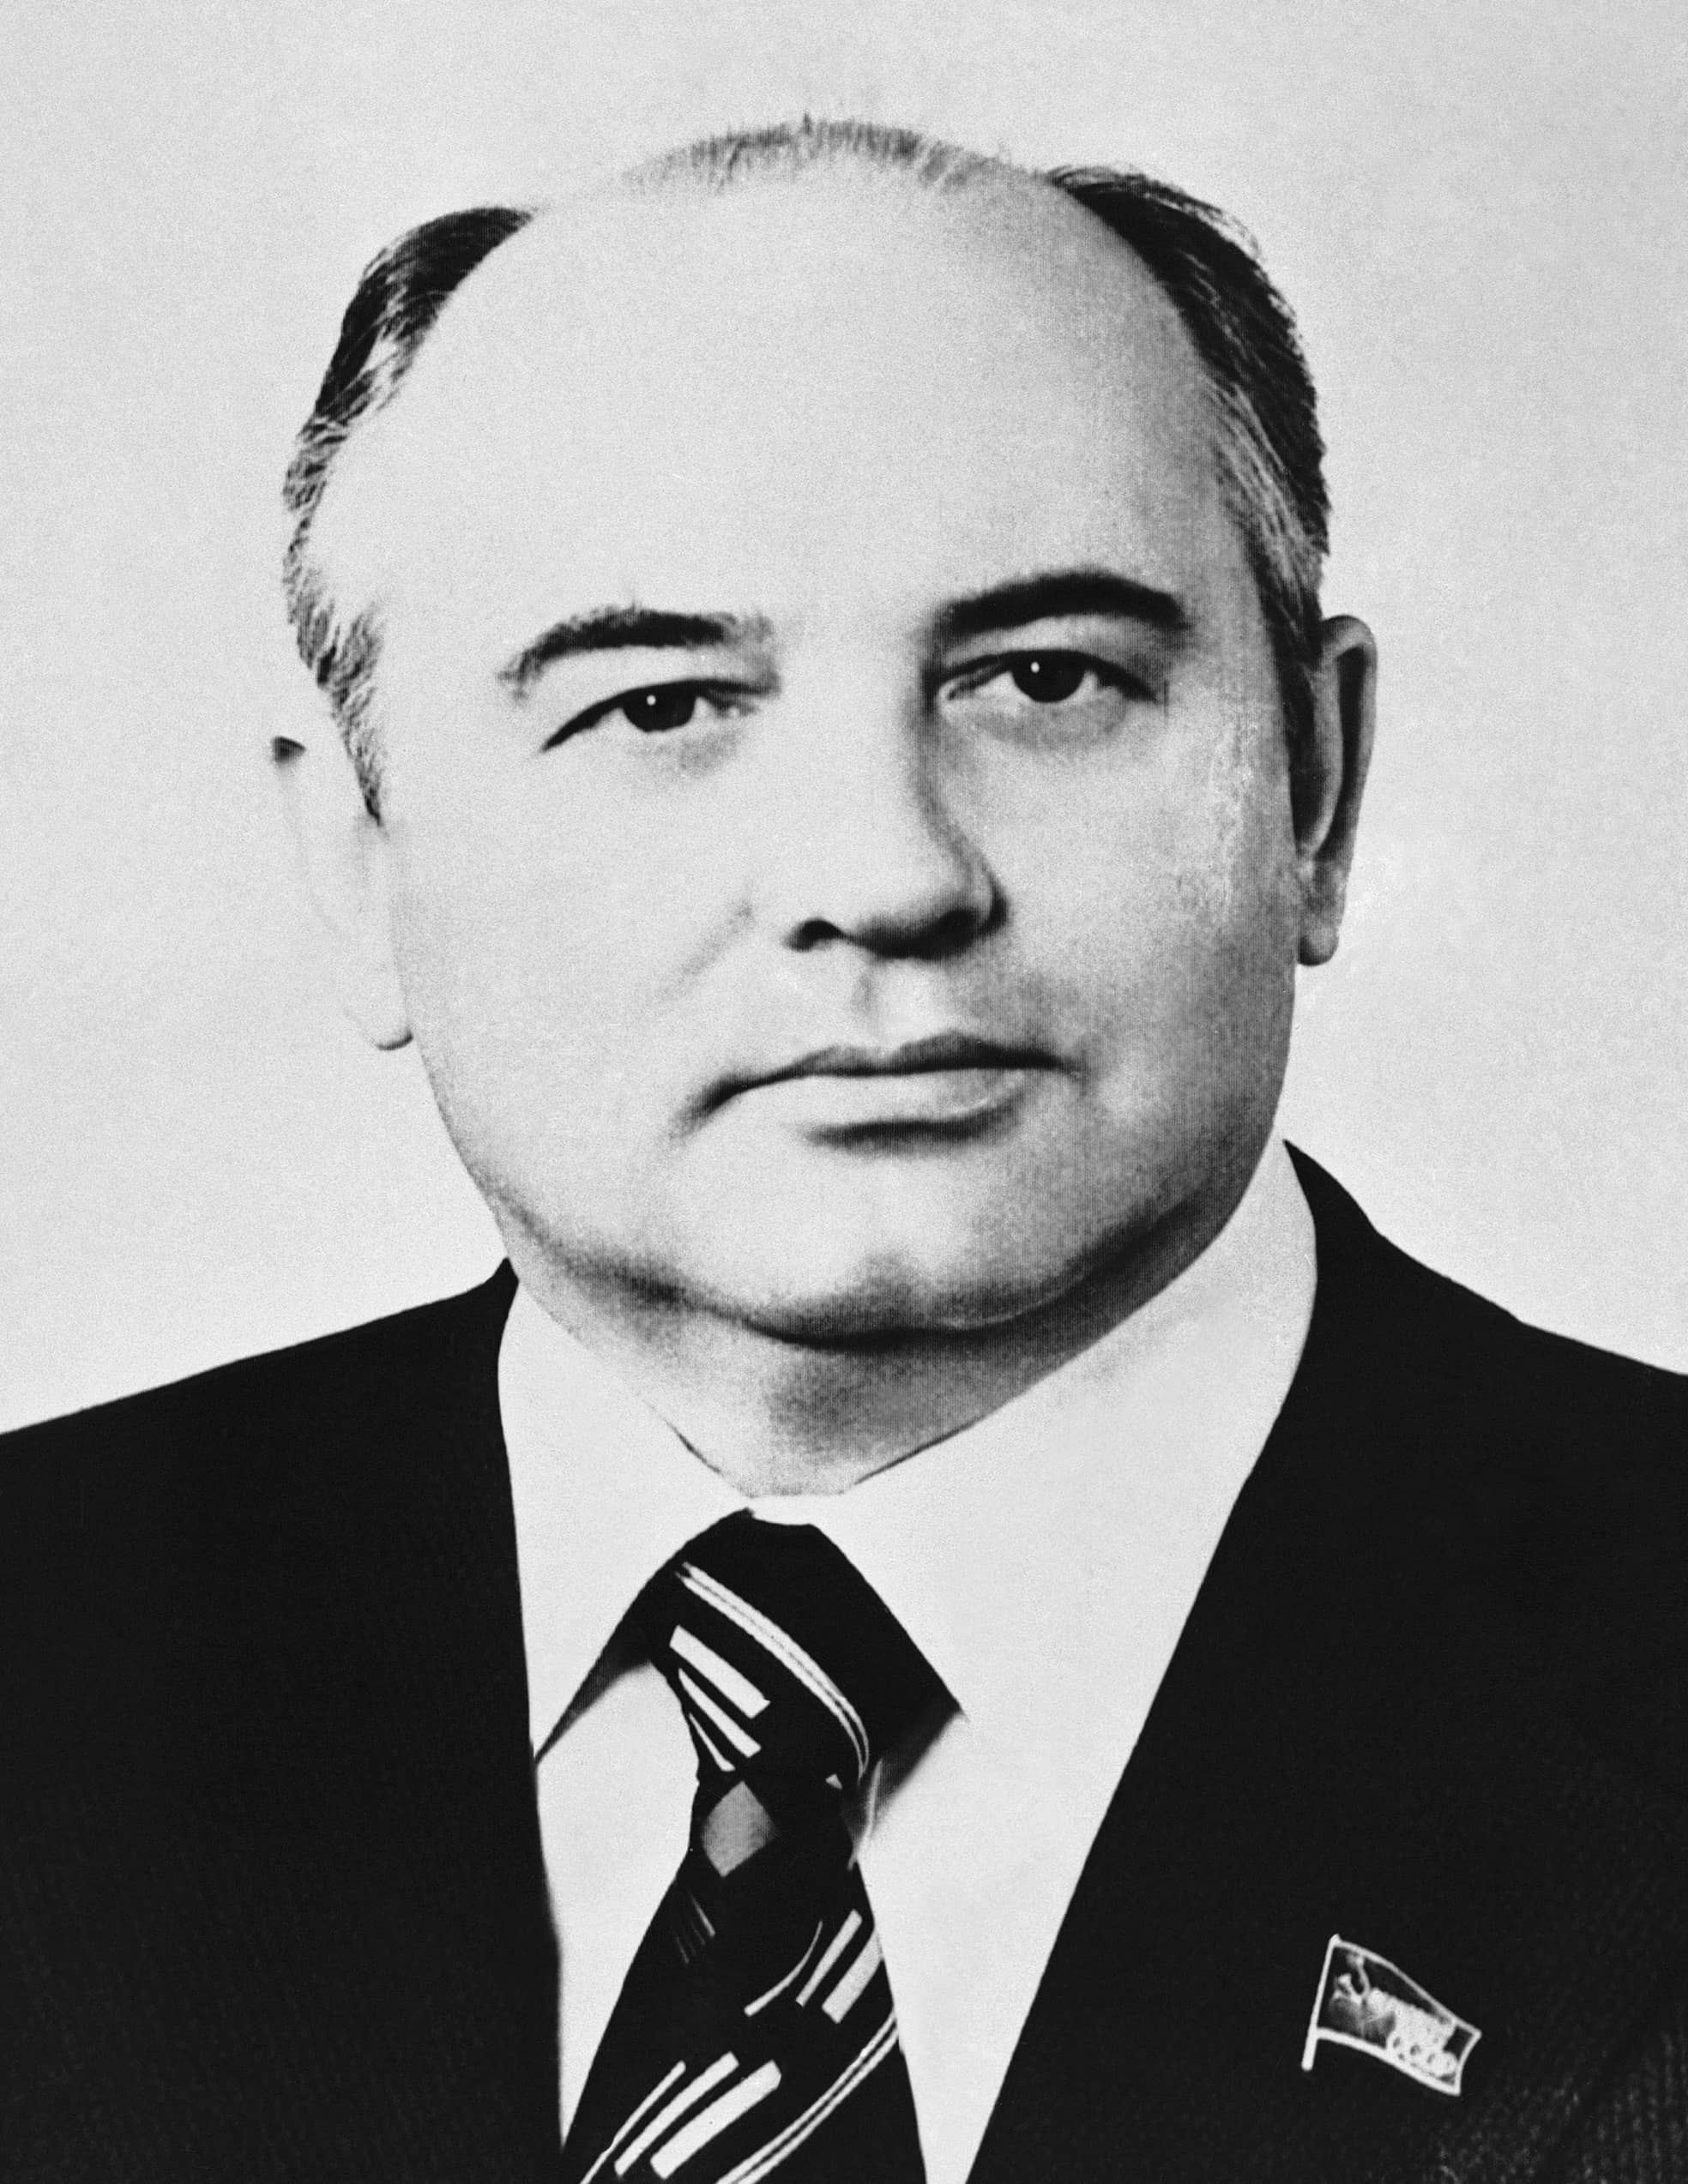 Gorbatschow im Jahr 1980